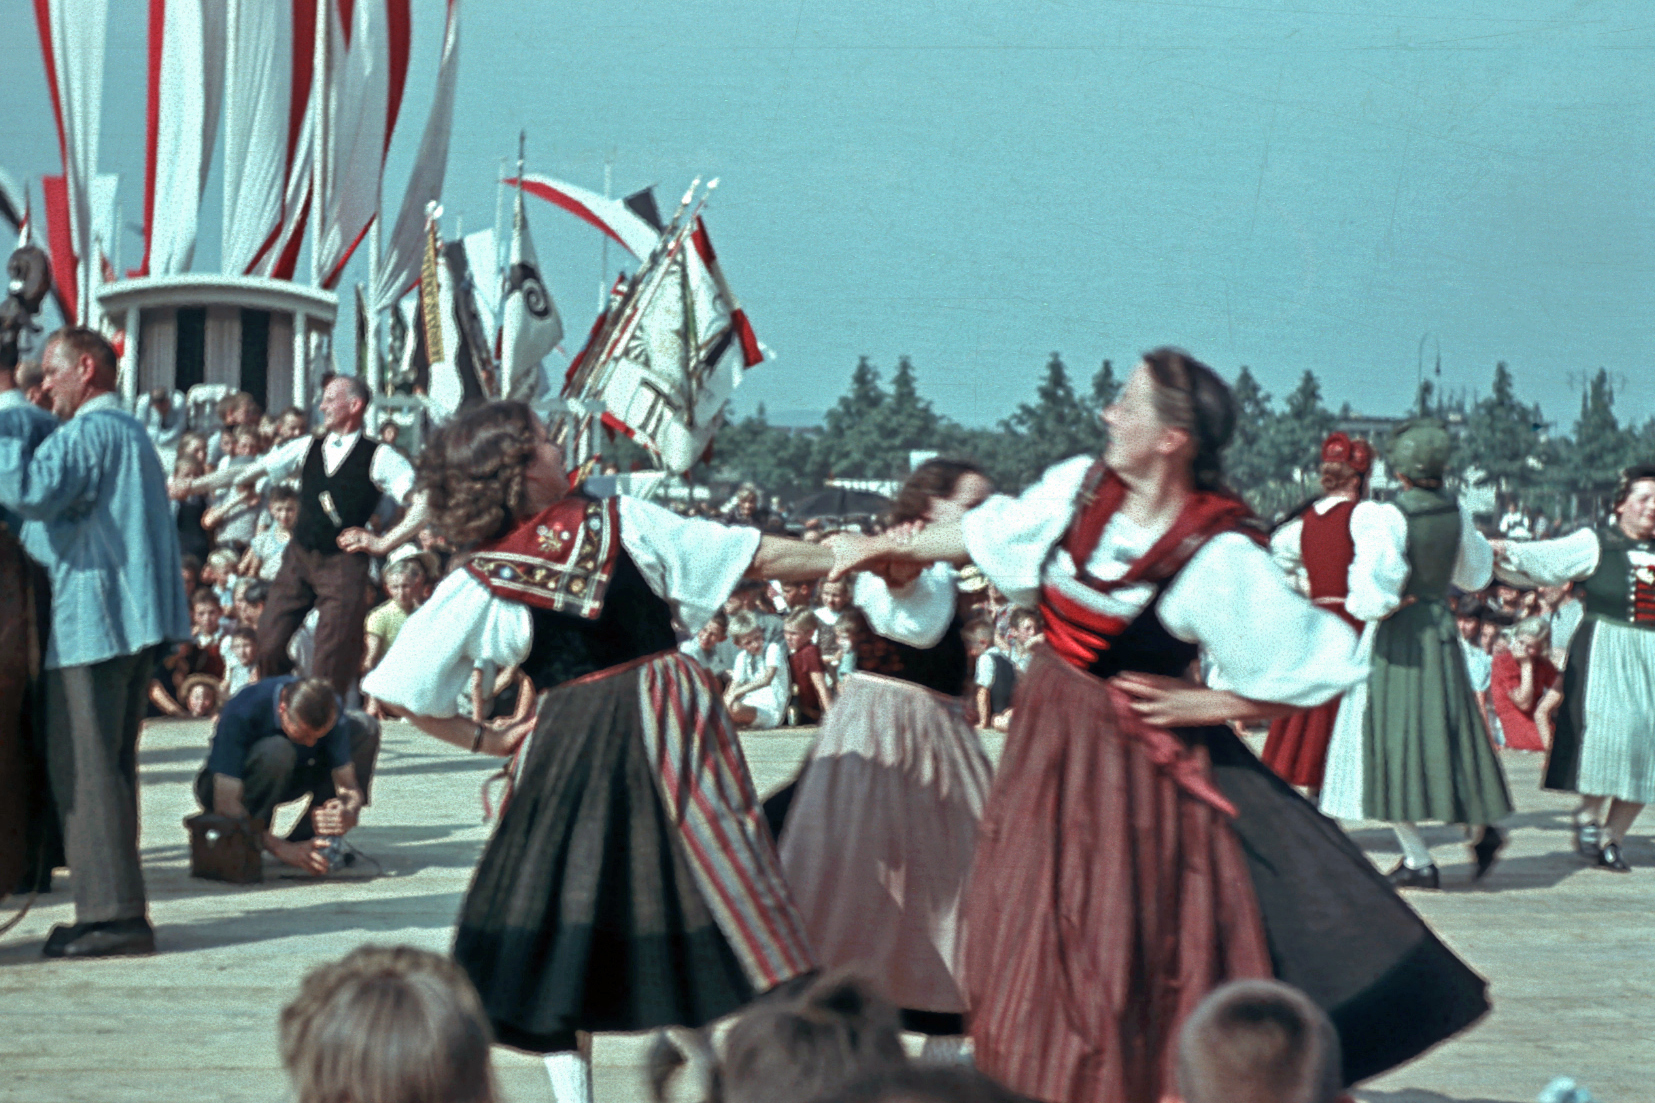 Danza popolare alla festa di San Giacomo, Basilea, 1944 © Theodor Strübin/Museum.BL, Liestal